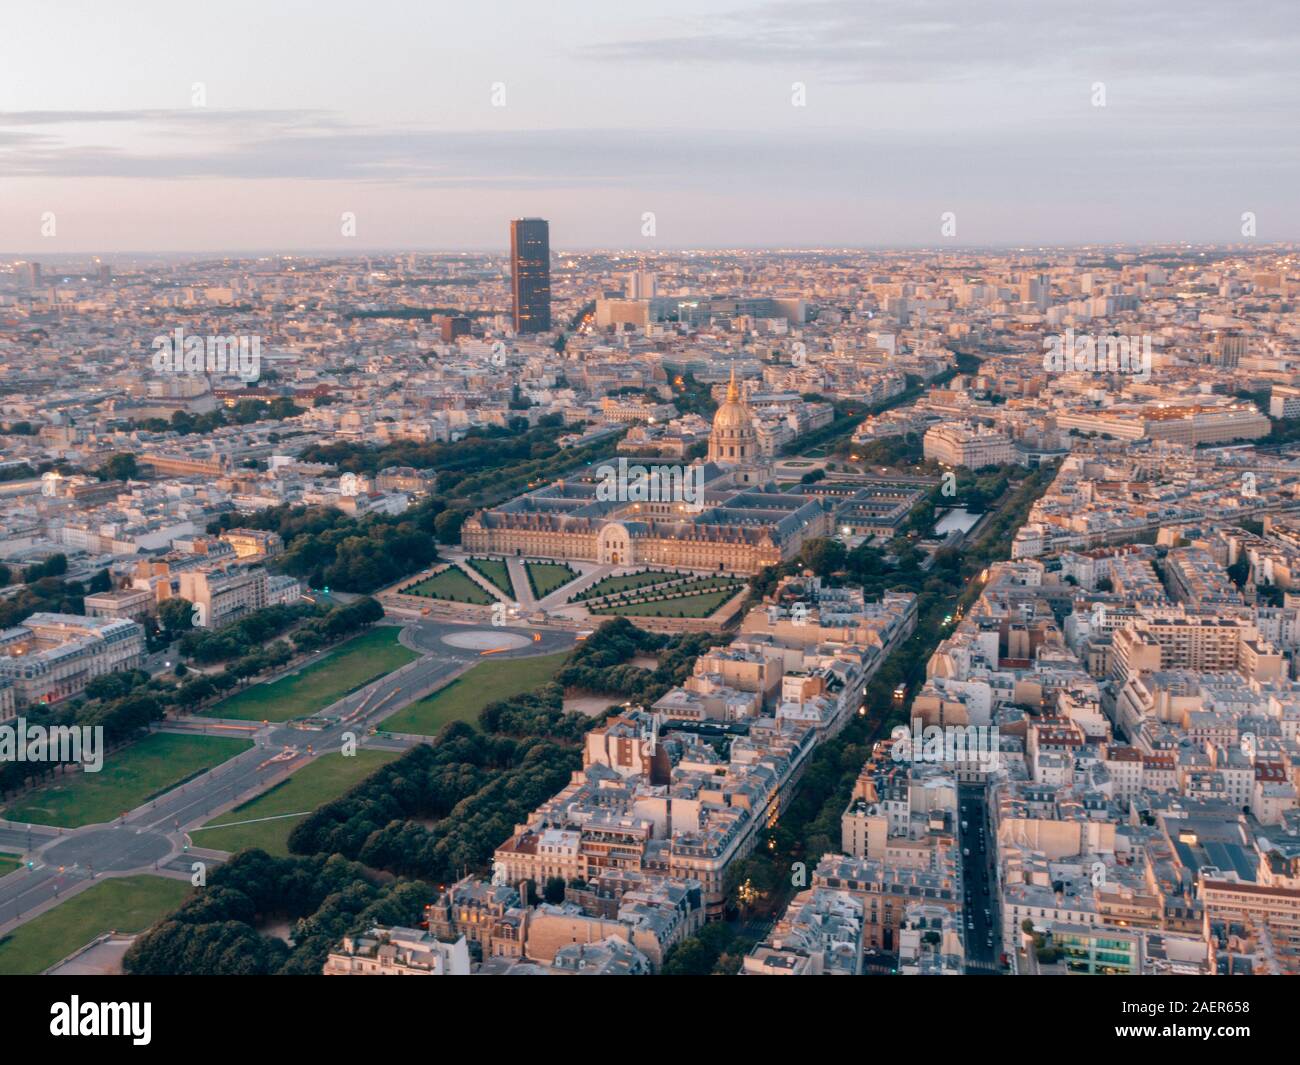 Drone erial tourné du paysage urbain de Paris, France avec l'Arc de Triomphe en premier plan et la célèbre Tour Eiffel en arrière-plan Banque D'Images